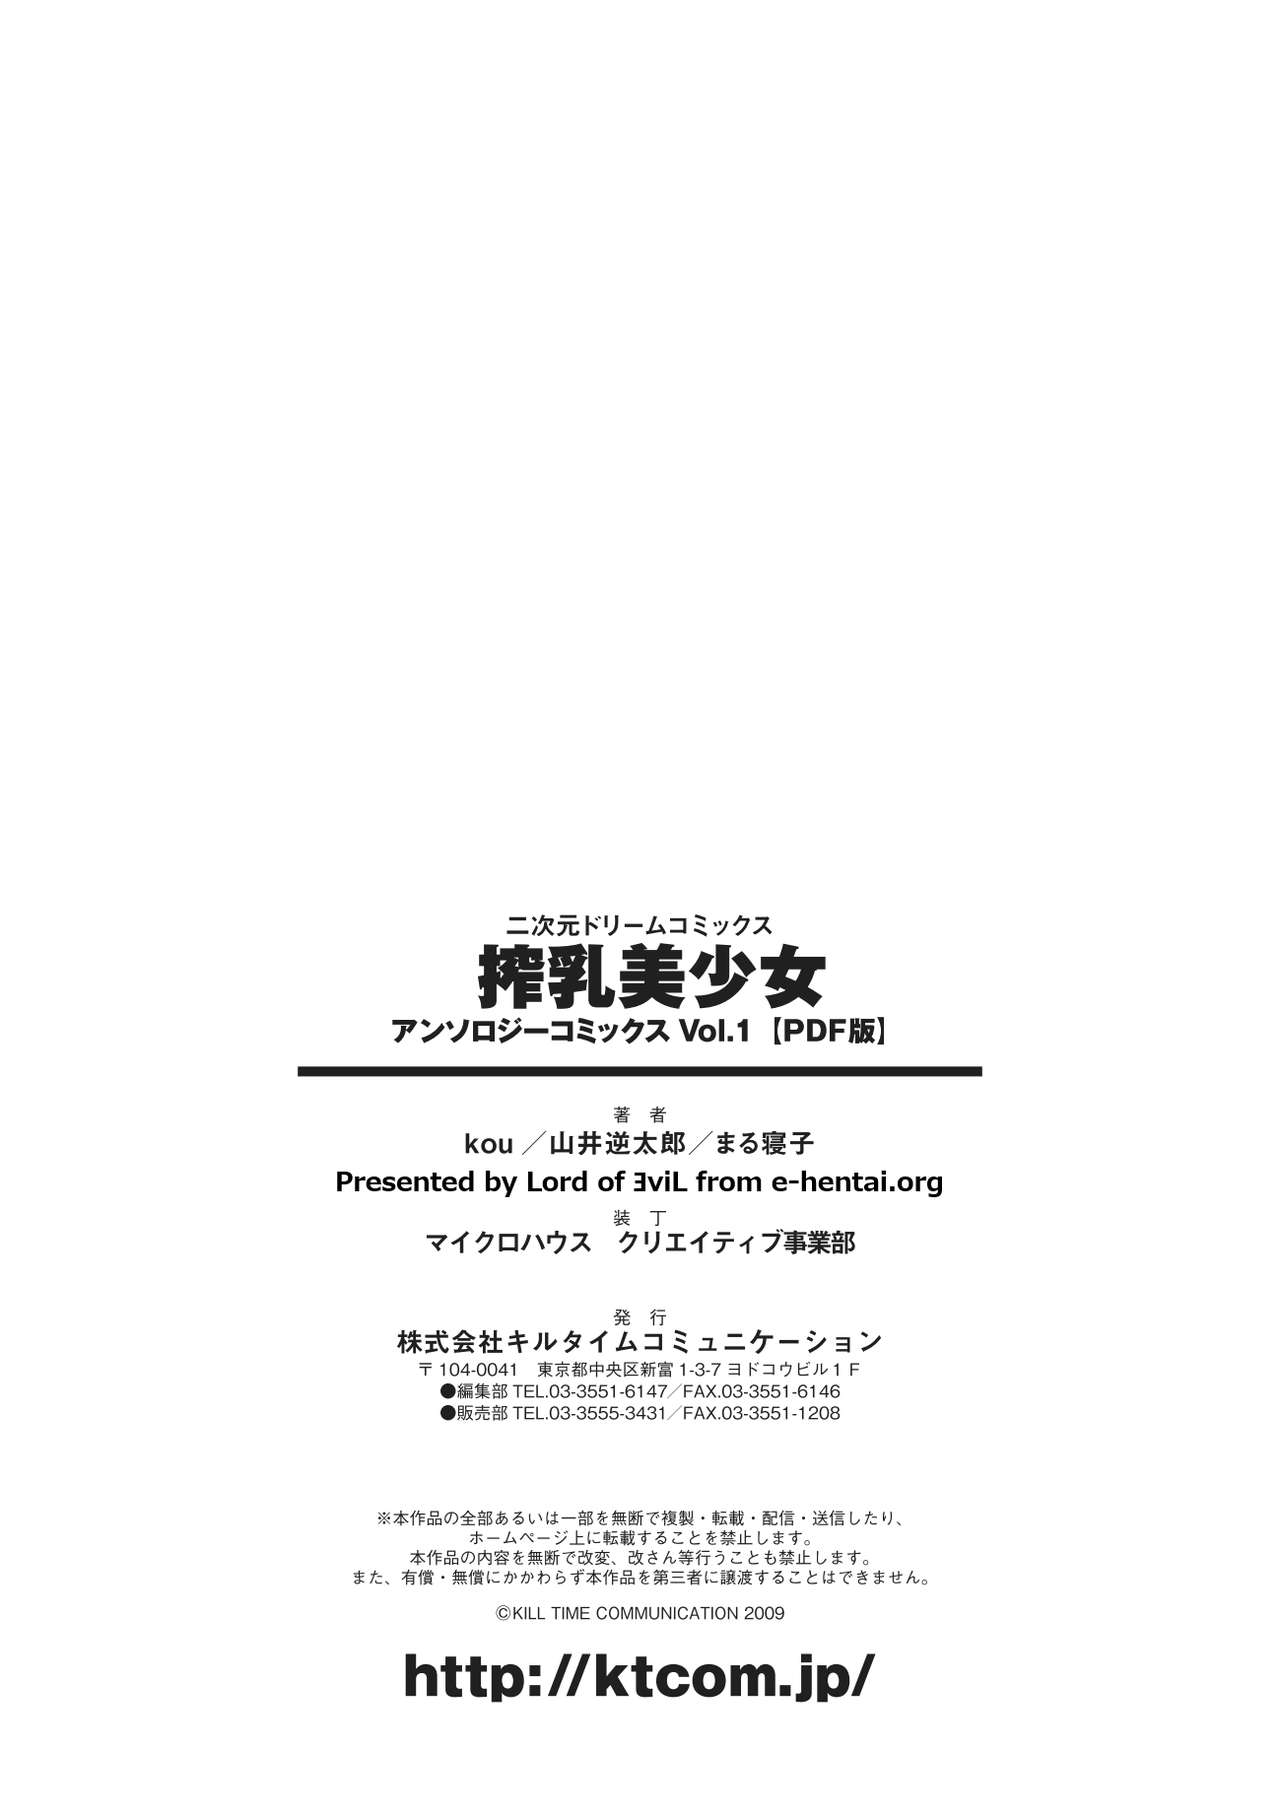 [Anthology] Sakunyuu Bishoujo Anthology Comics Vol.1 [Digital] [アンソロジー] 搾乳美少女 アンソロジーコミックスVol.1 [DL版]